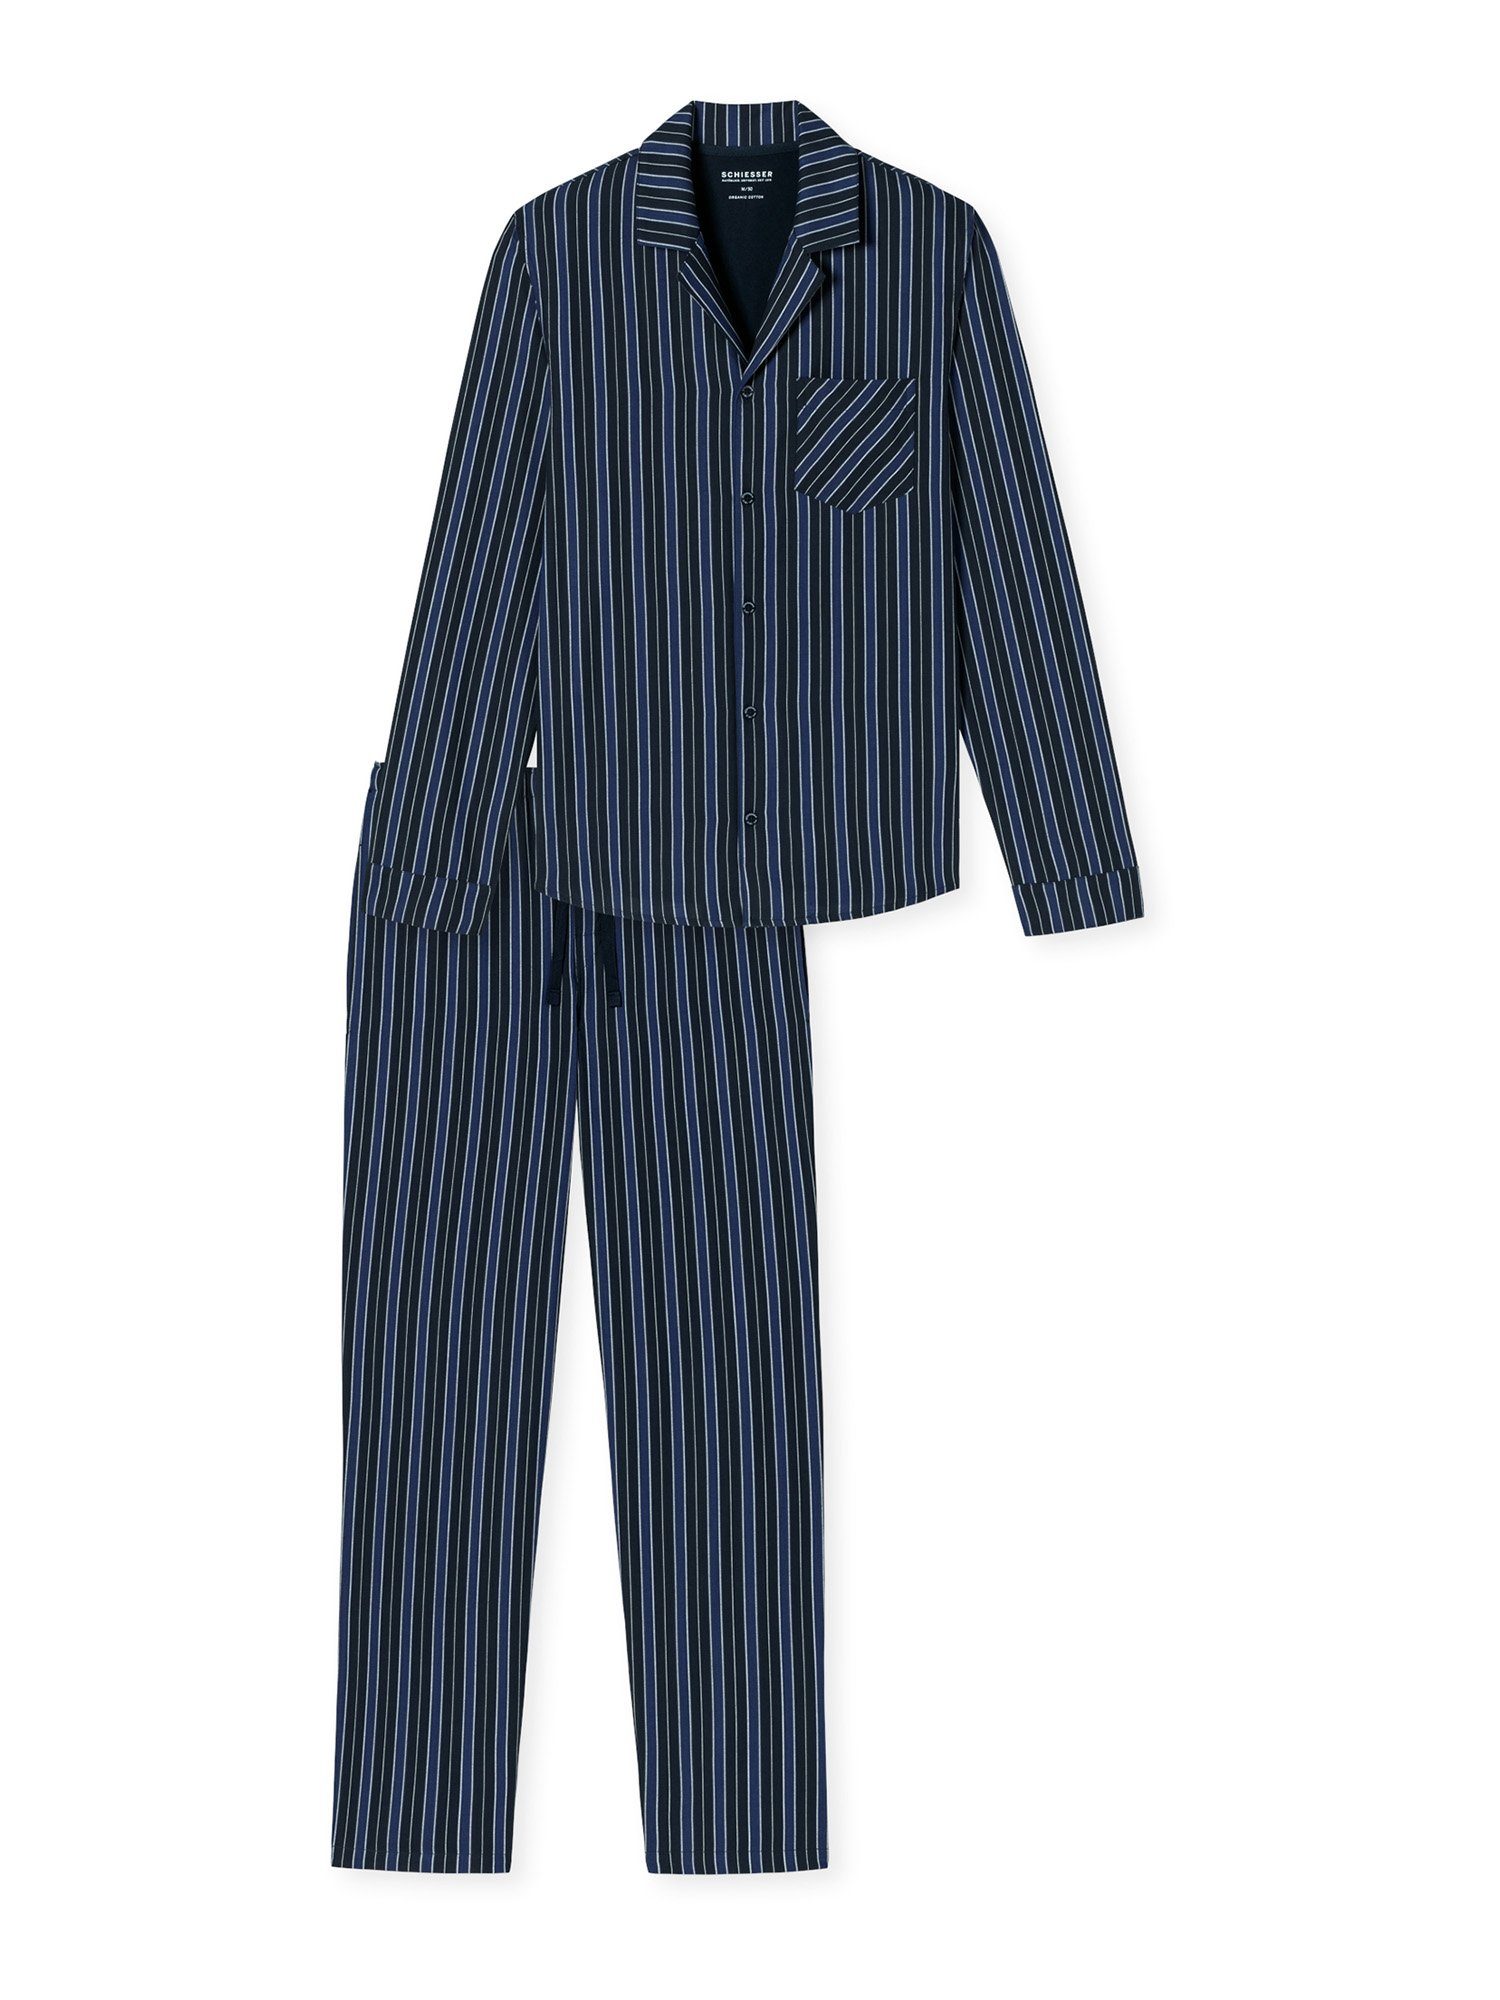 Schiesser Pyjama Selected Premium schlafanzug pyjama schlafmode,  Aufgesetzte Brusttasche und Seitentaschen